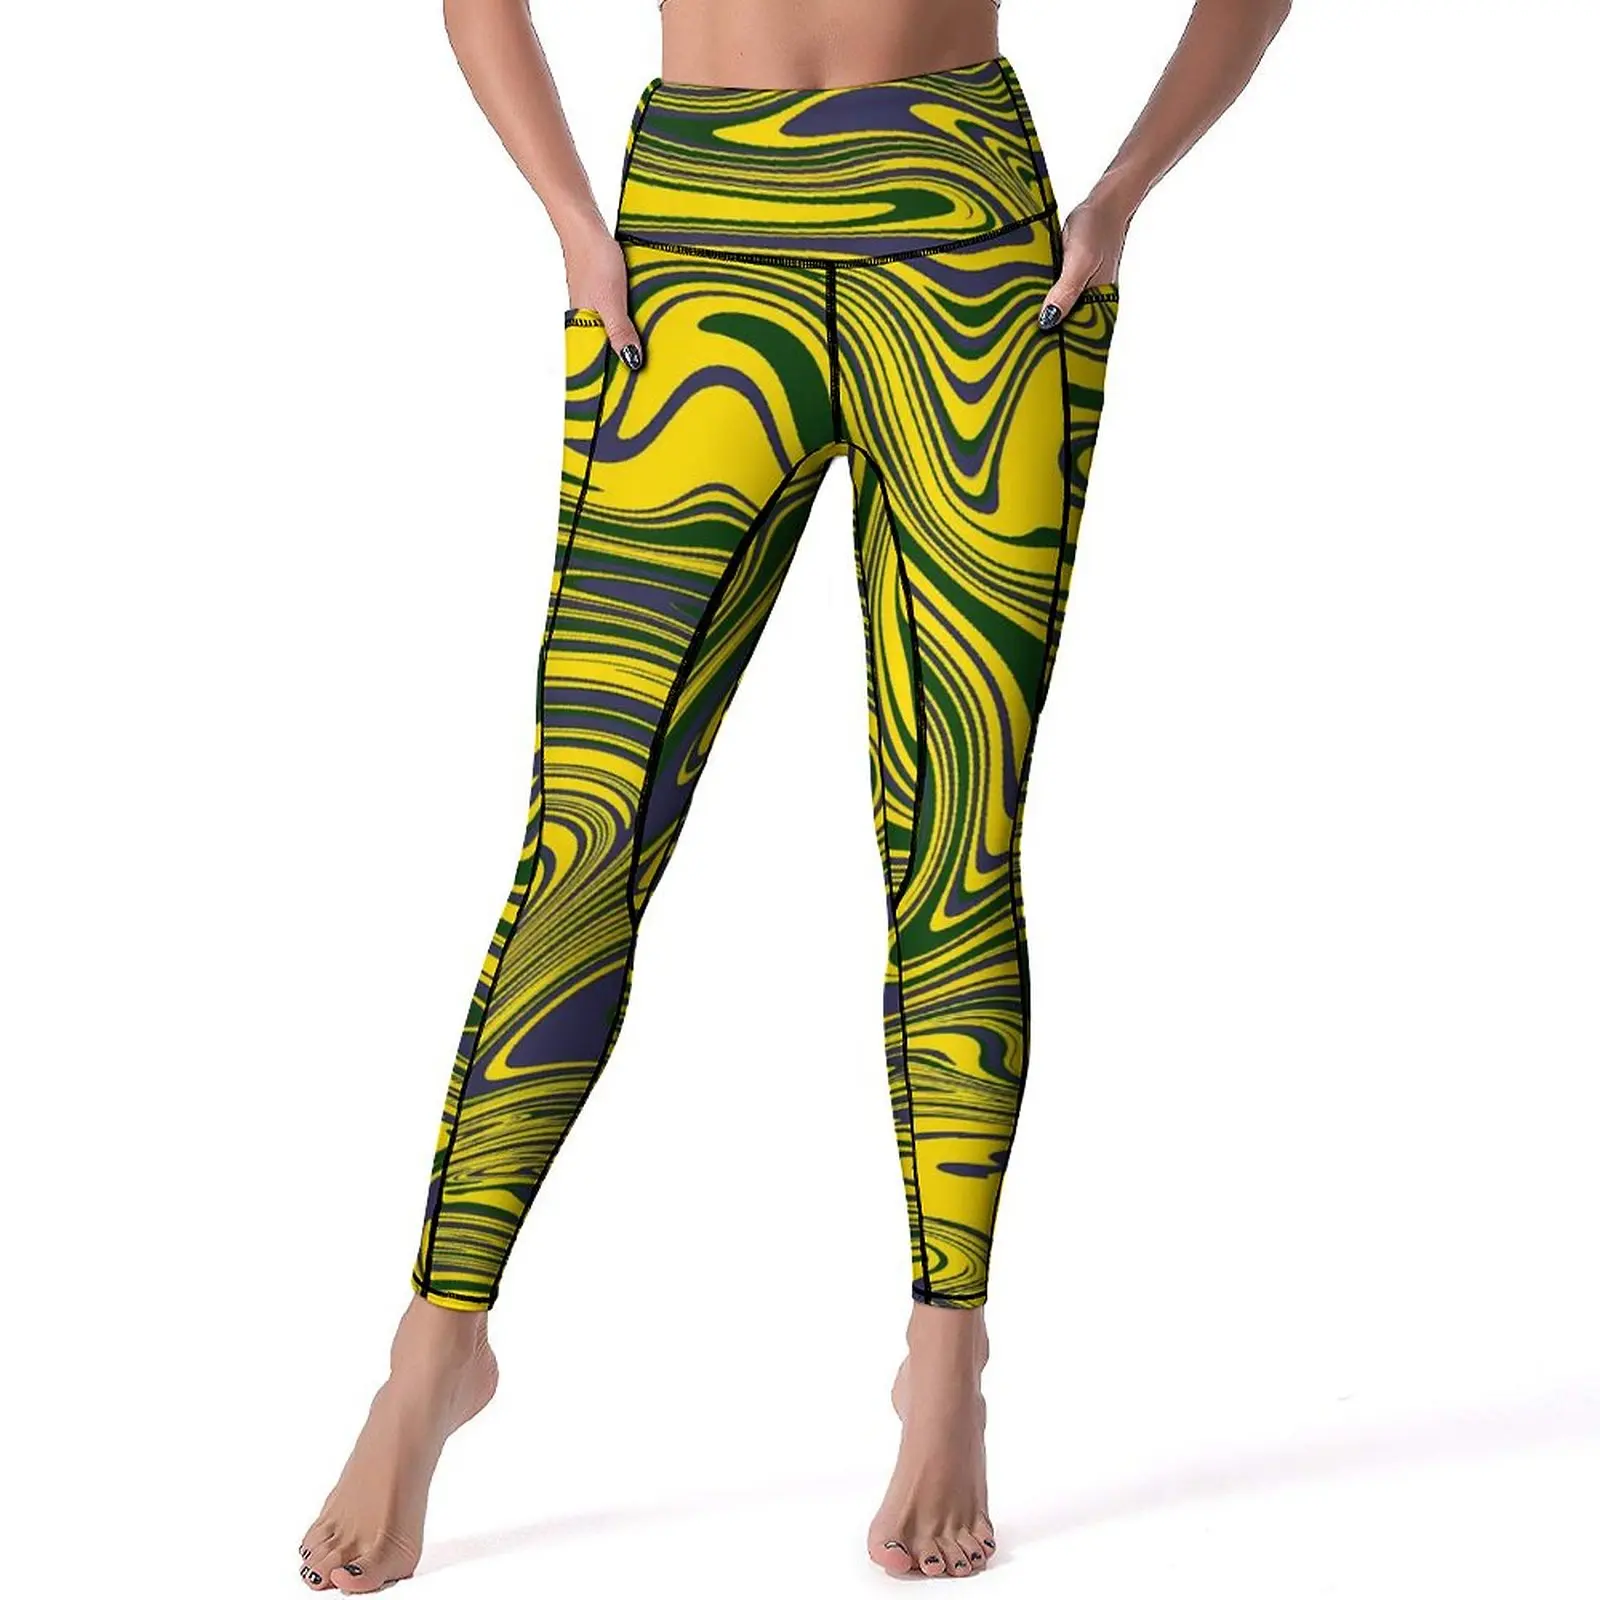 

Пикантные Леггинсы с принтом Swirls, желтые, зеленые, фиолетовые спортивные штаны для йоги, эластичные спортивные колготки с высокой талией и карманами, Ретро Леггинсы на заказ